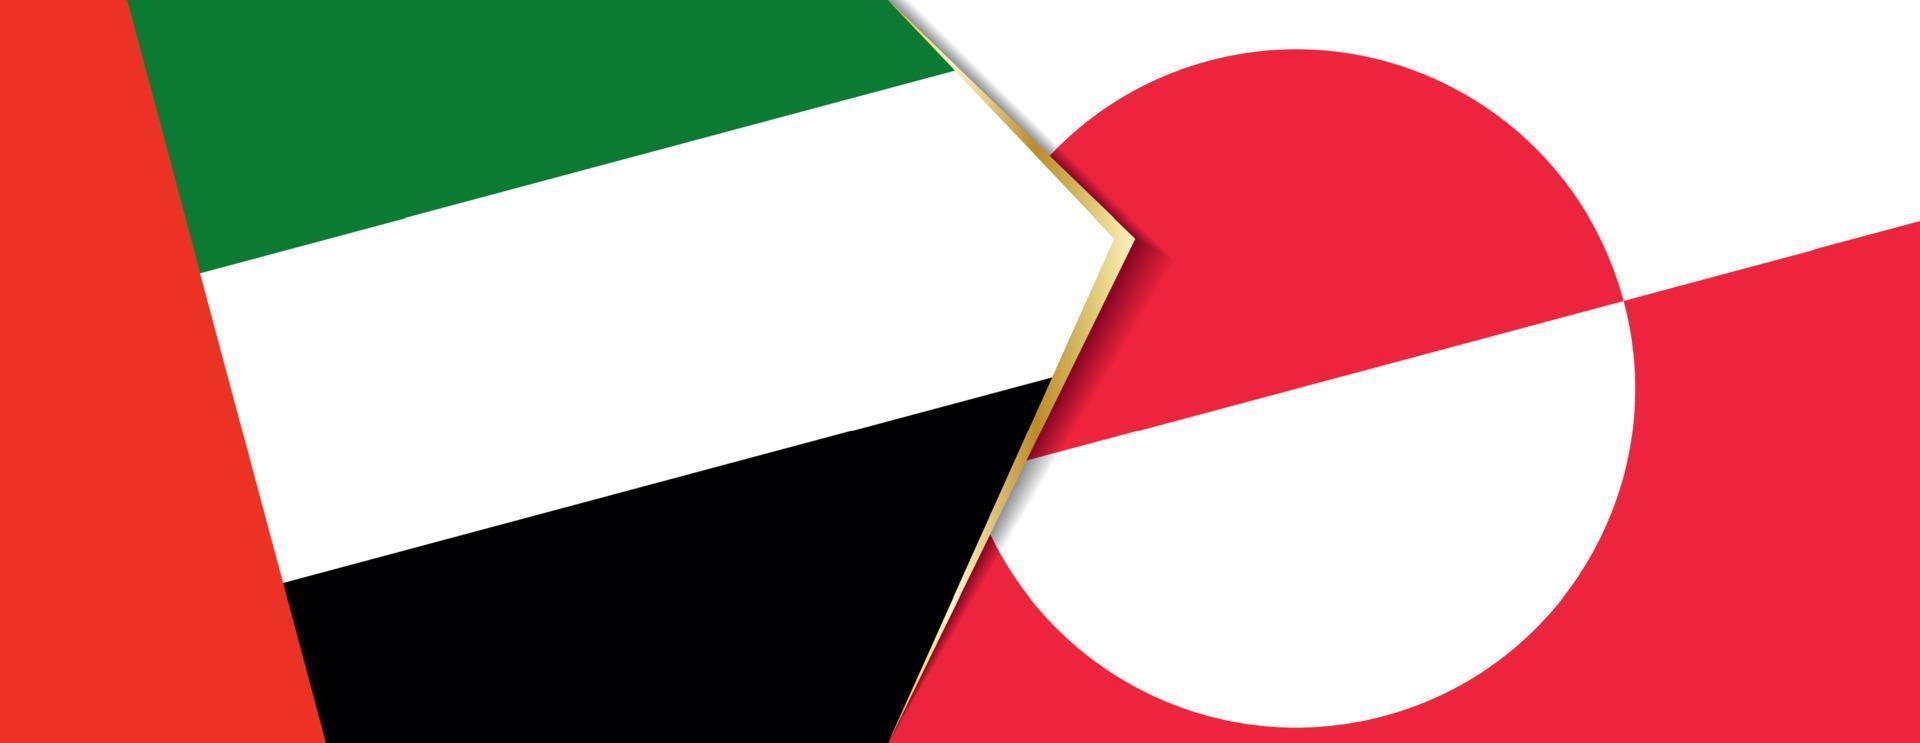 unido árabe emiratos y Groenlandia banderas, dos vector banderas